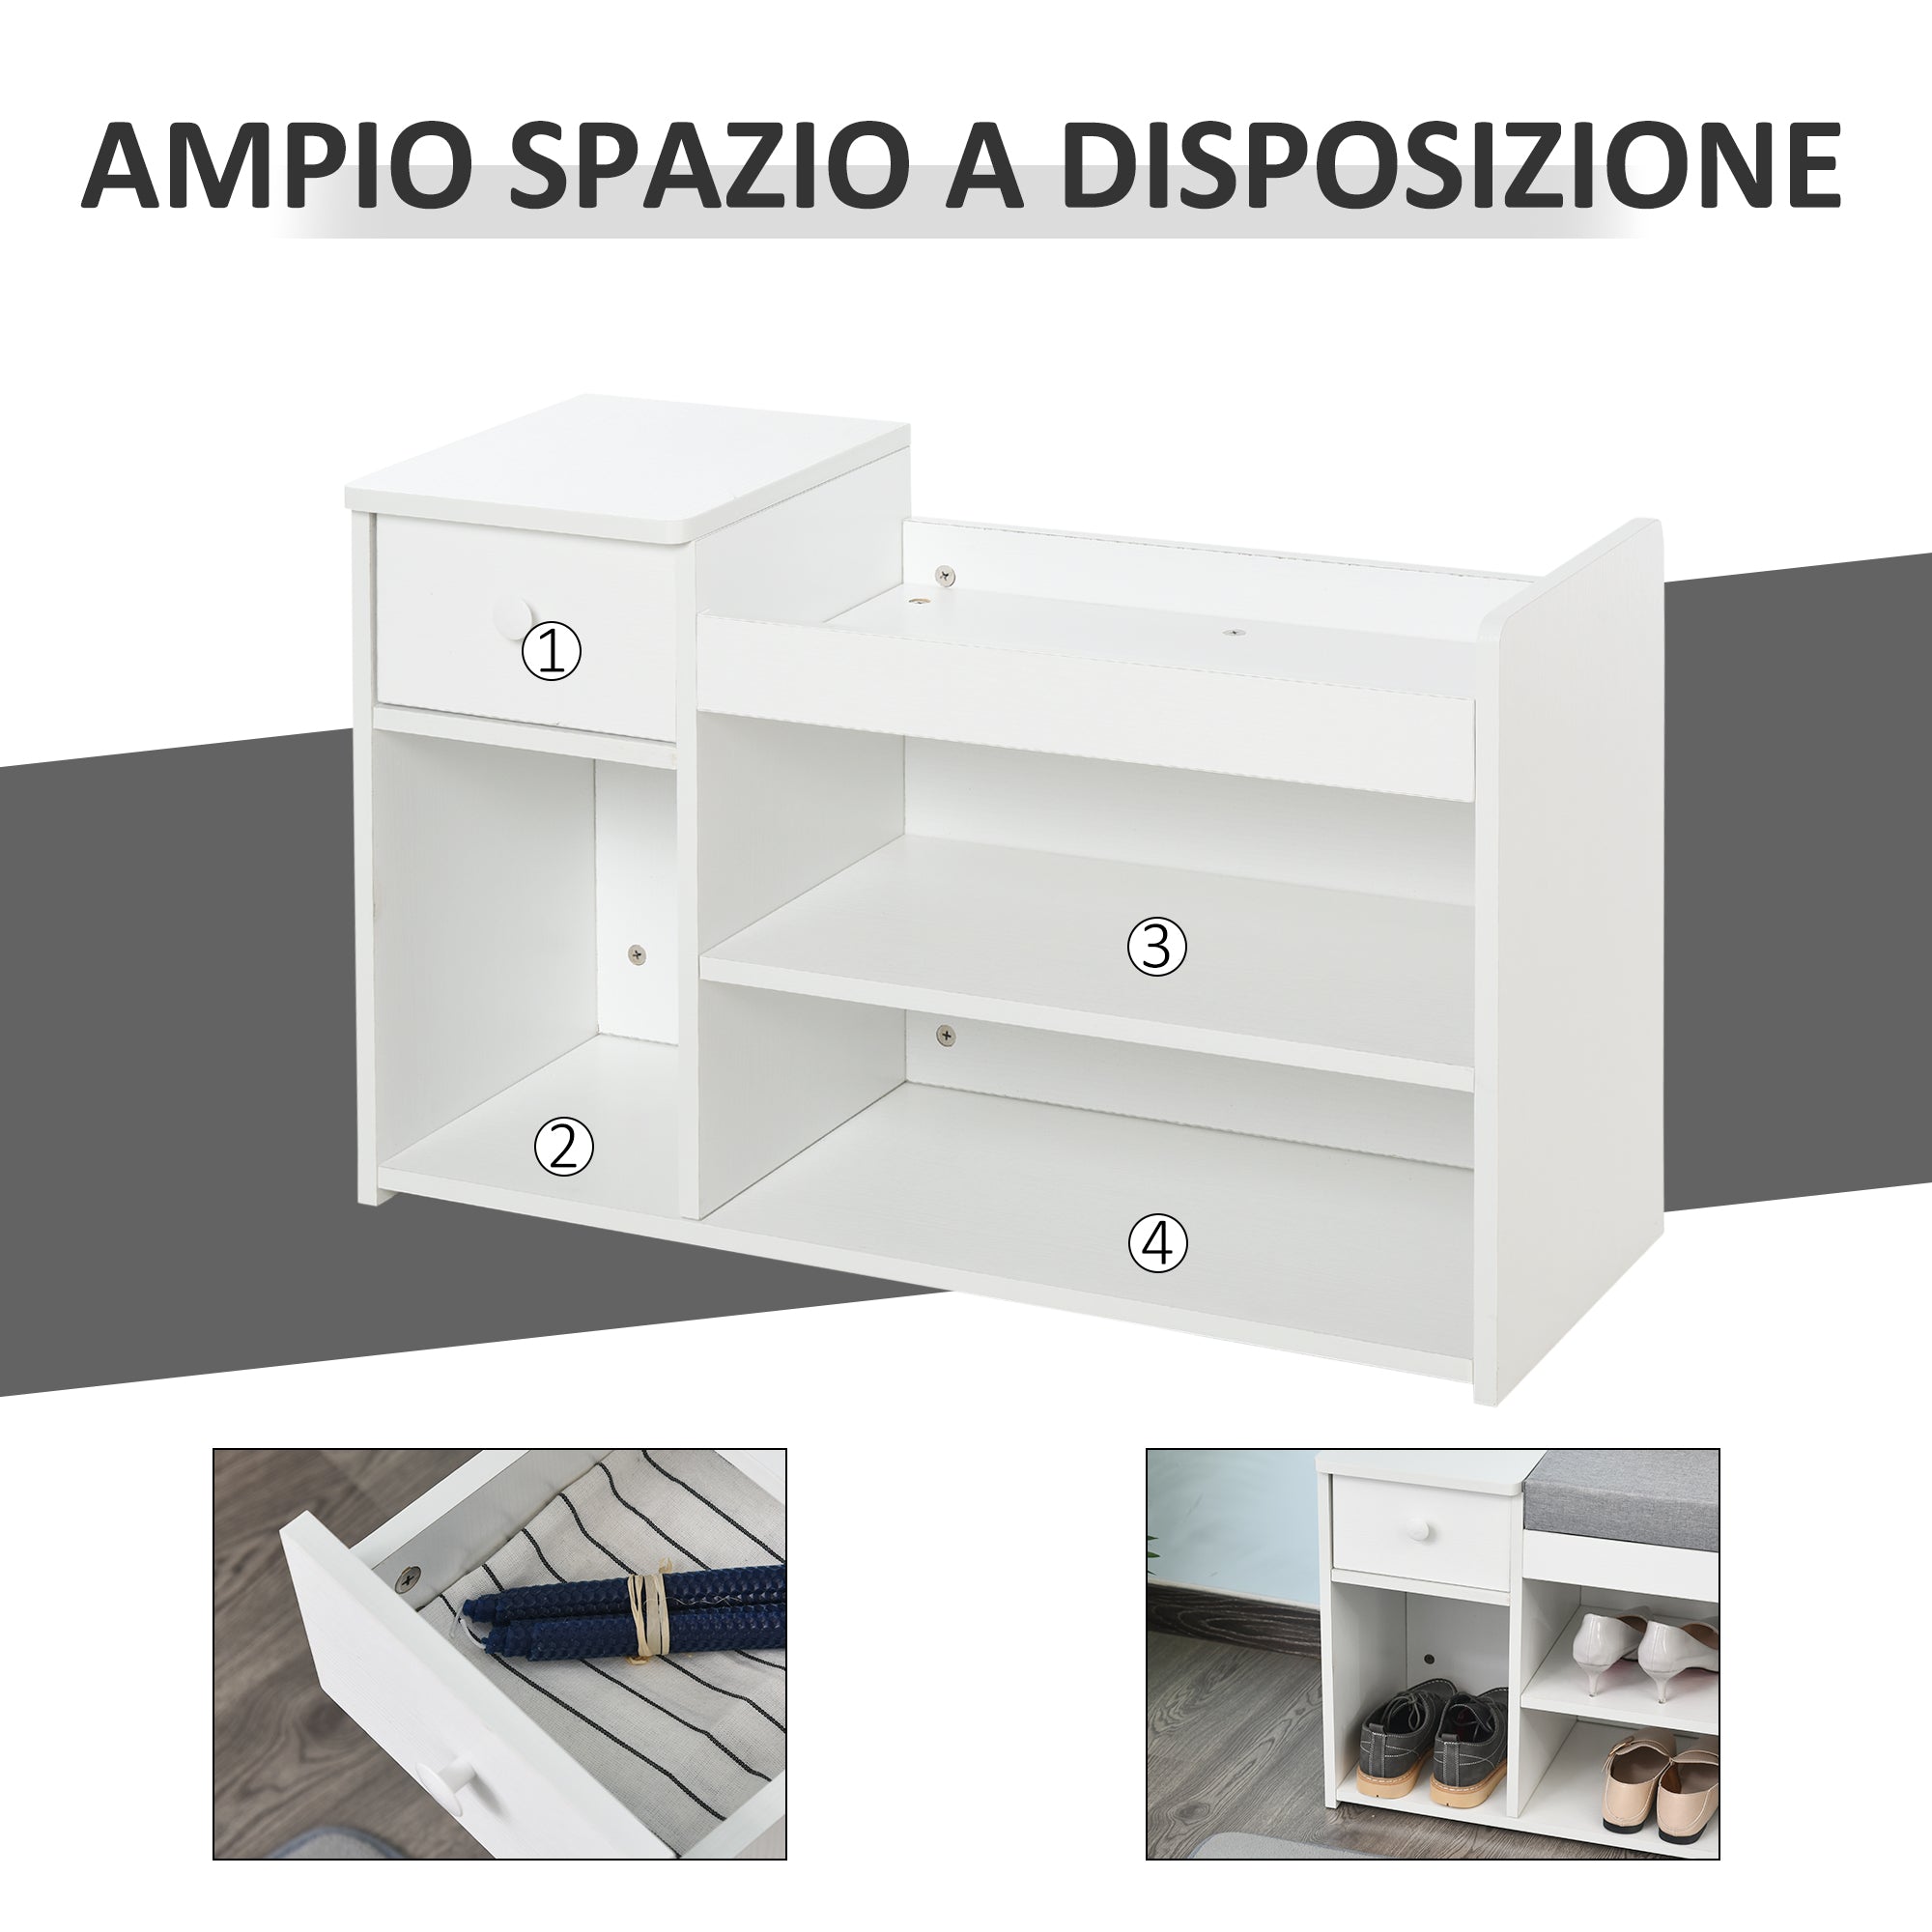 EASYCOMFORT Panca Scarpiera con Cuscino, Cassetto e 3 Vani Aperti in Legno,  81x31.5x49cm, Bianco